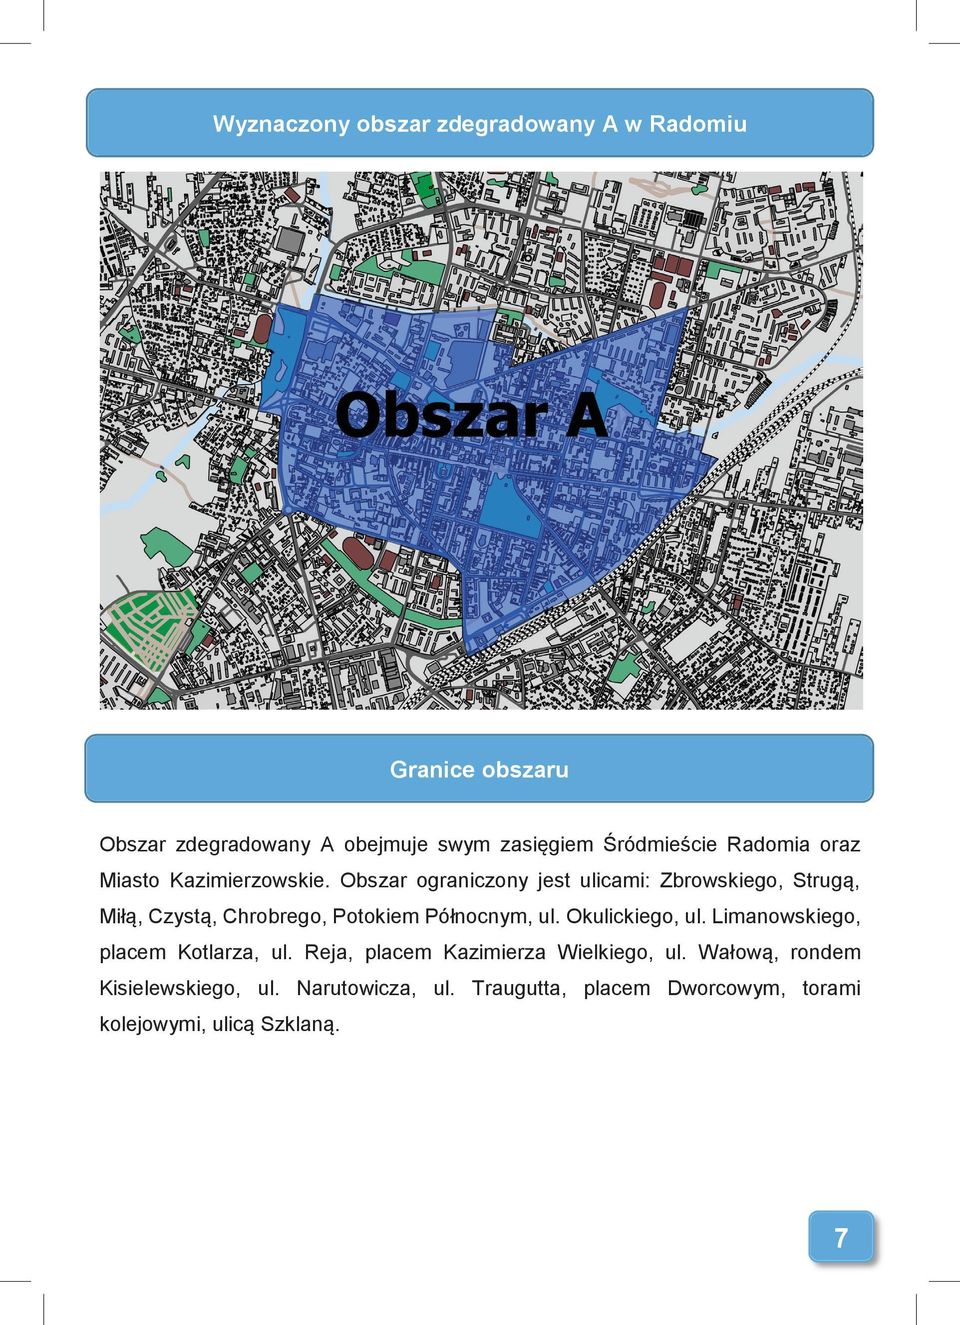 Obszar ograniczony jest ulicami: Zbrowskiego, Strugą, Miłą, Czystą, Chrobrego, Potokiem Północnym, ul.